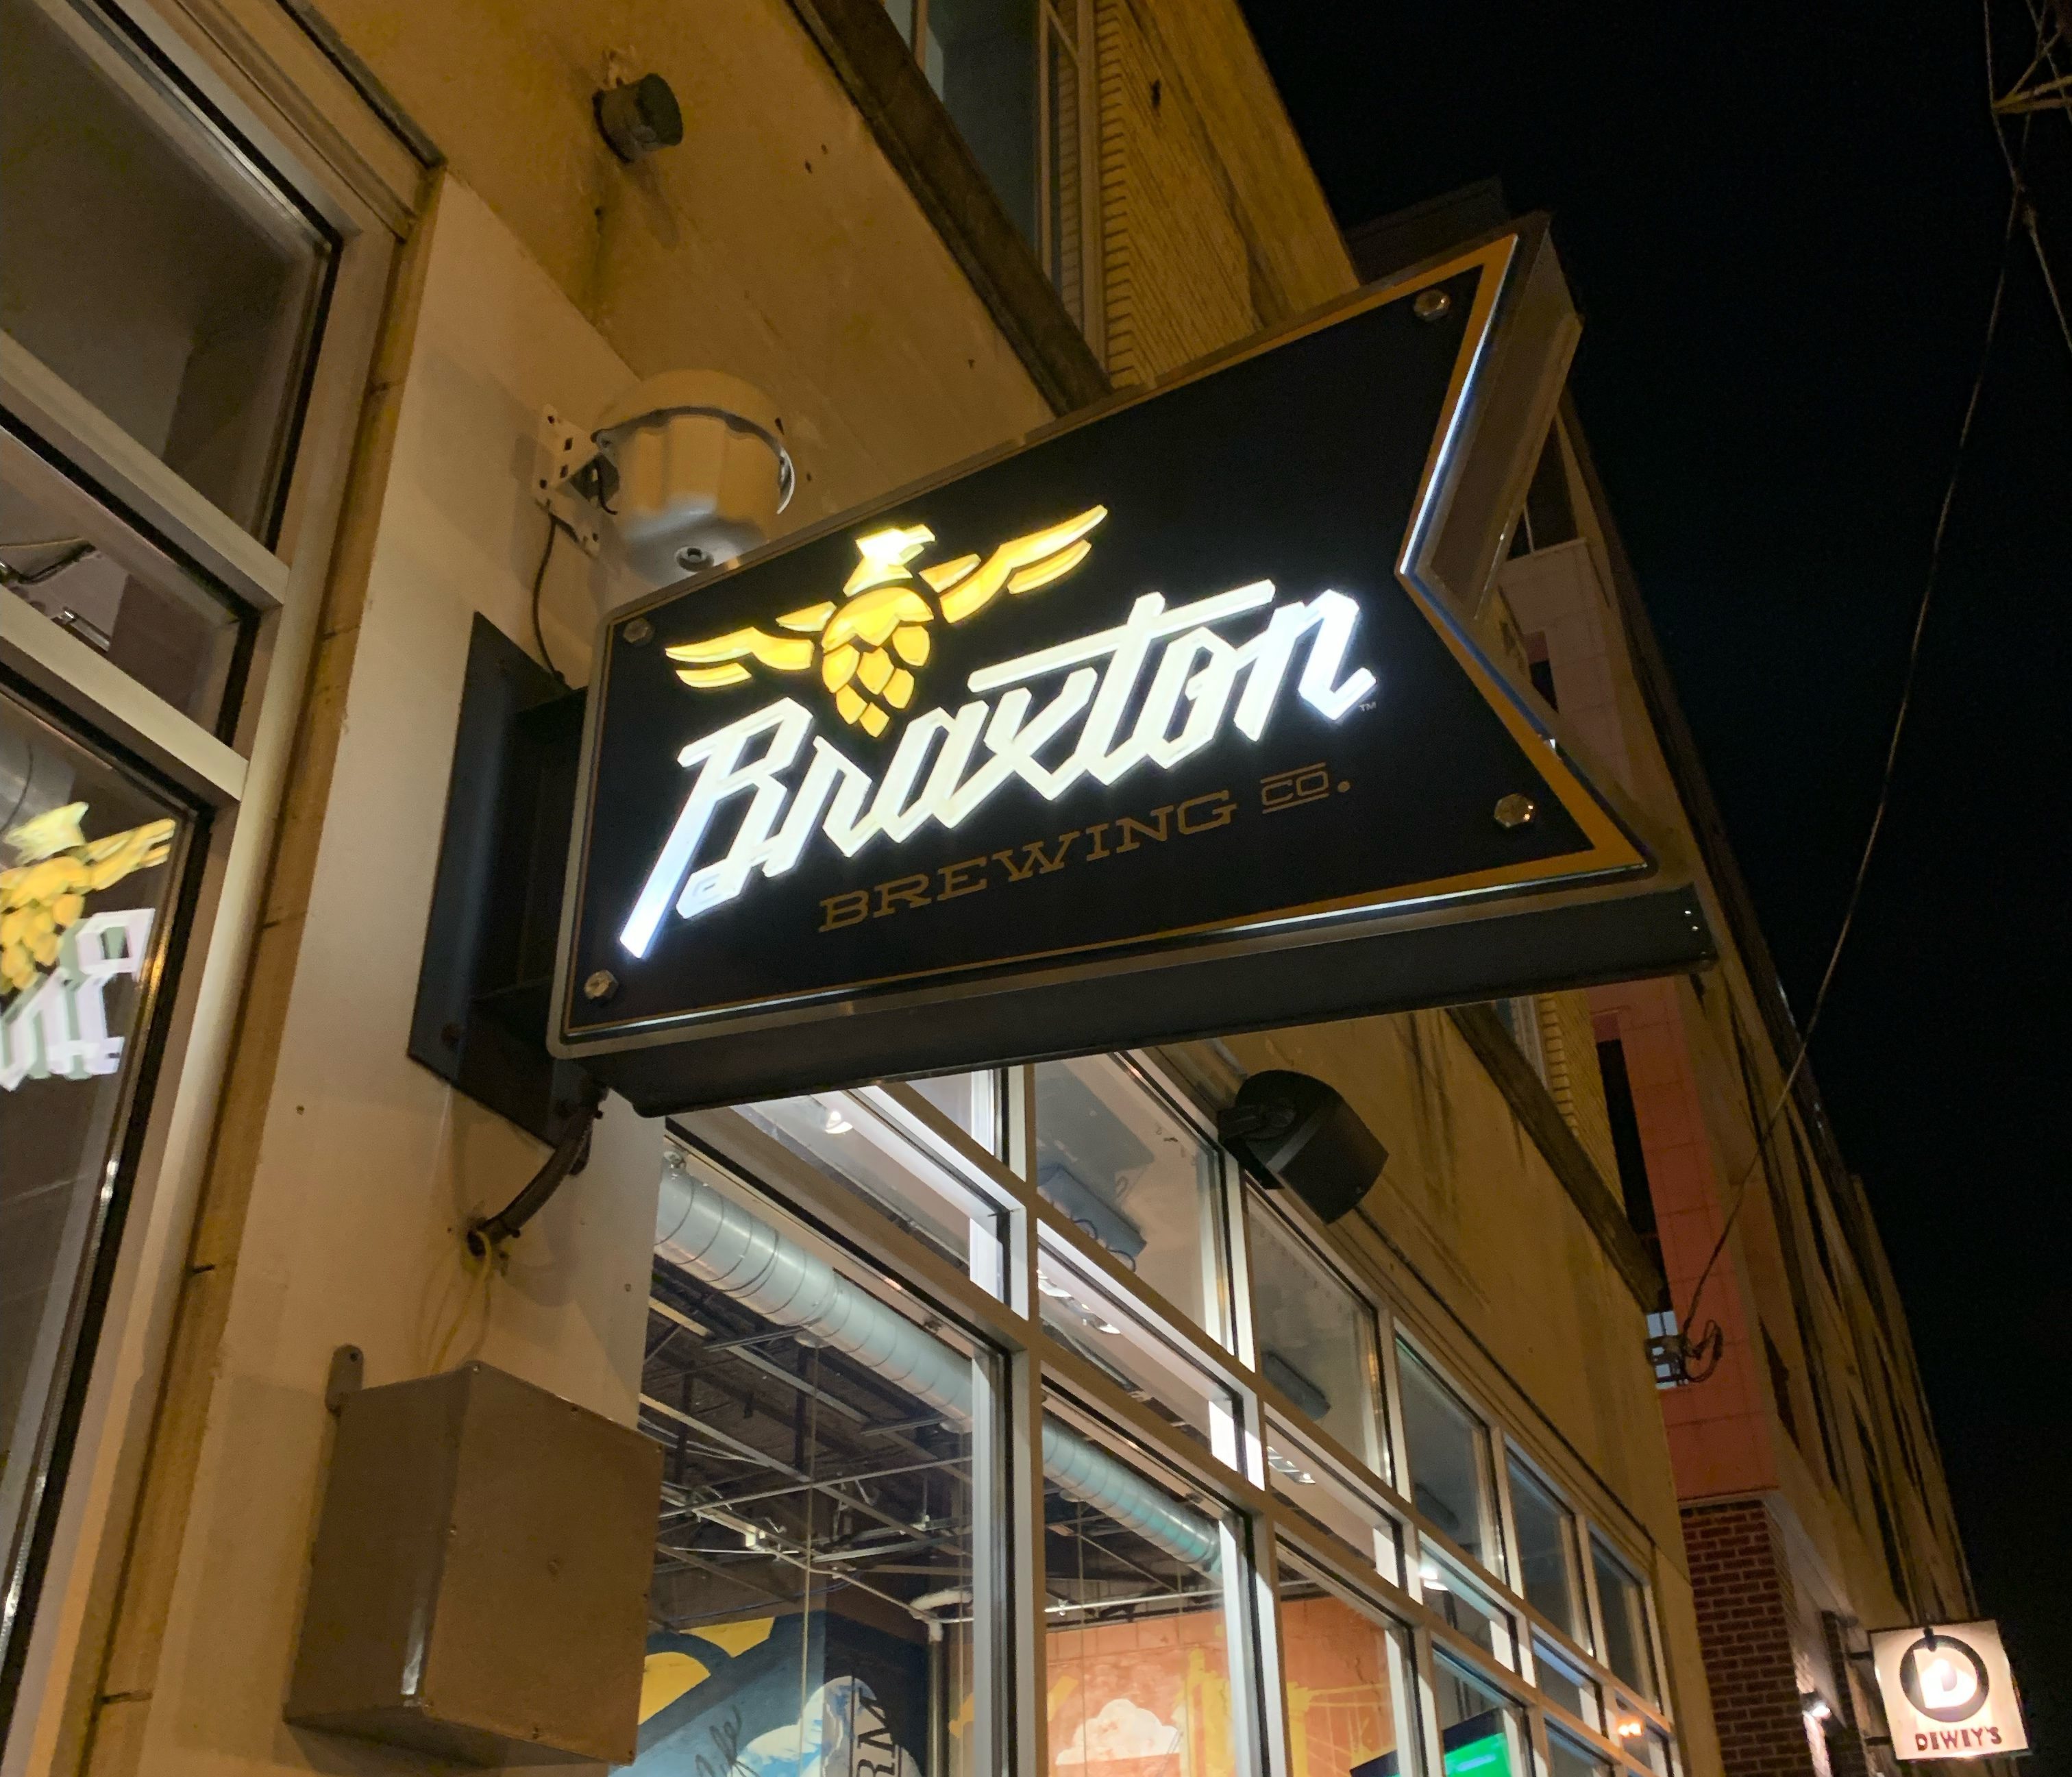 Braxton Brewing